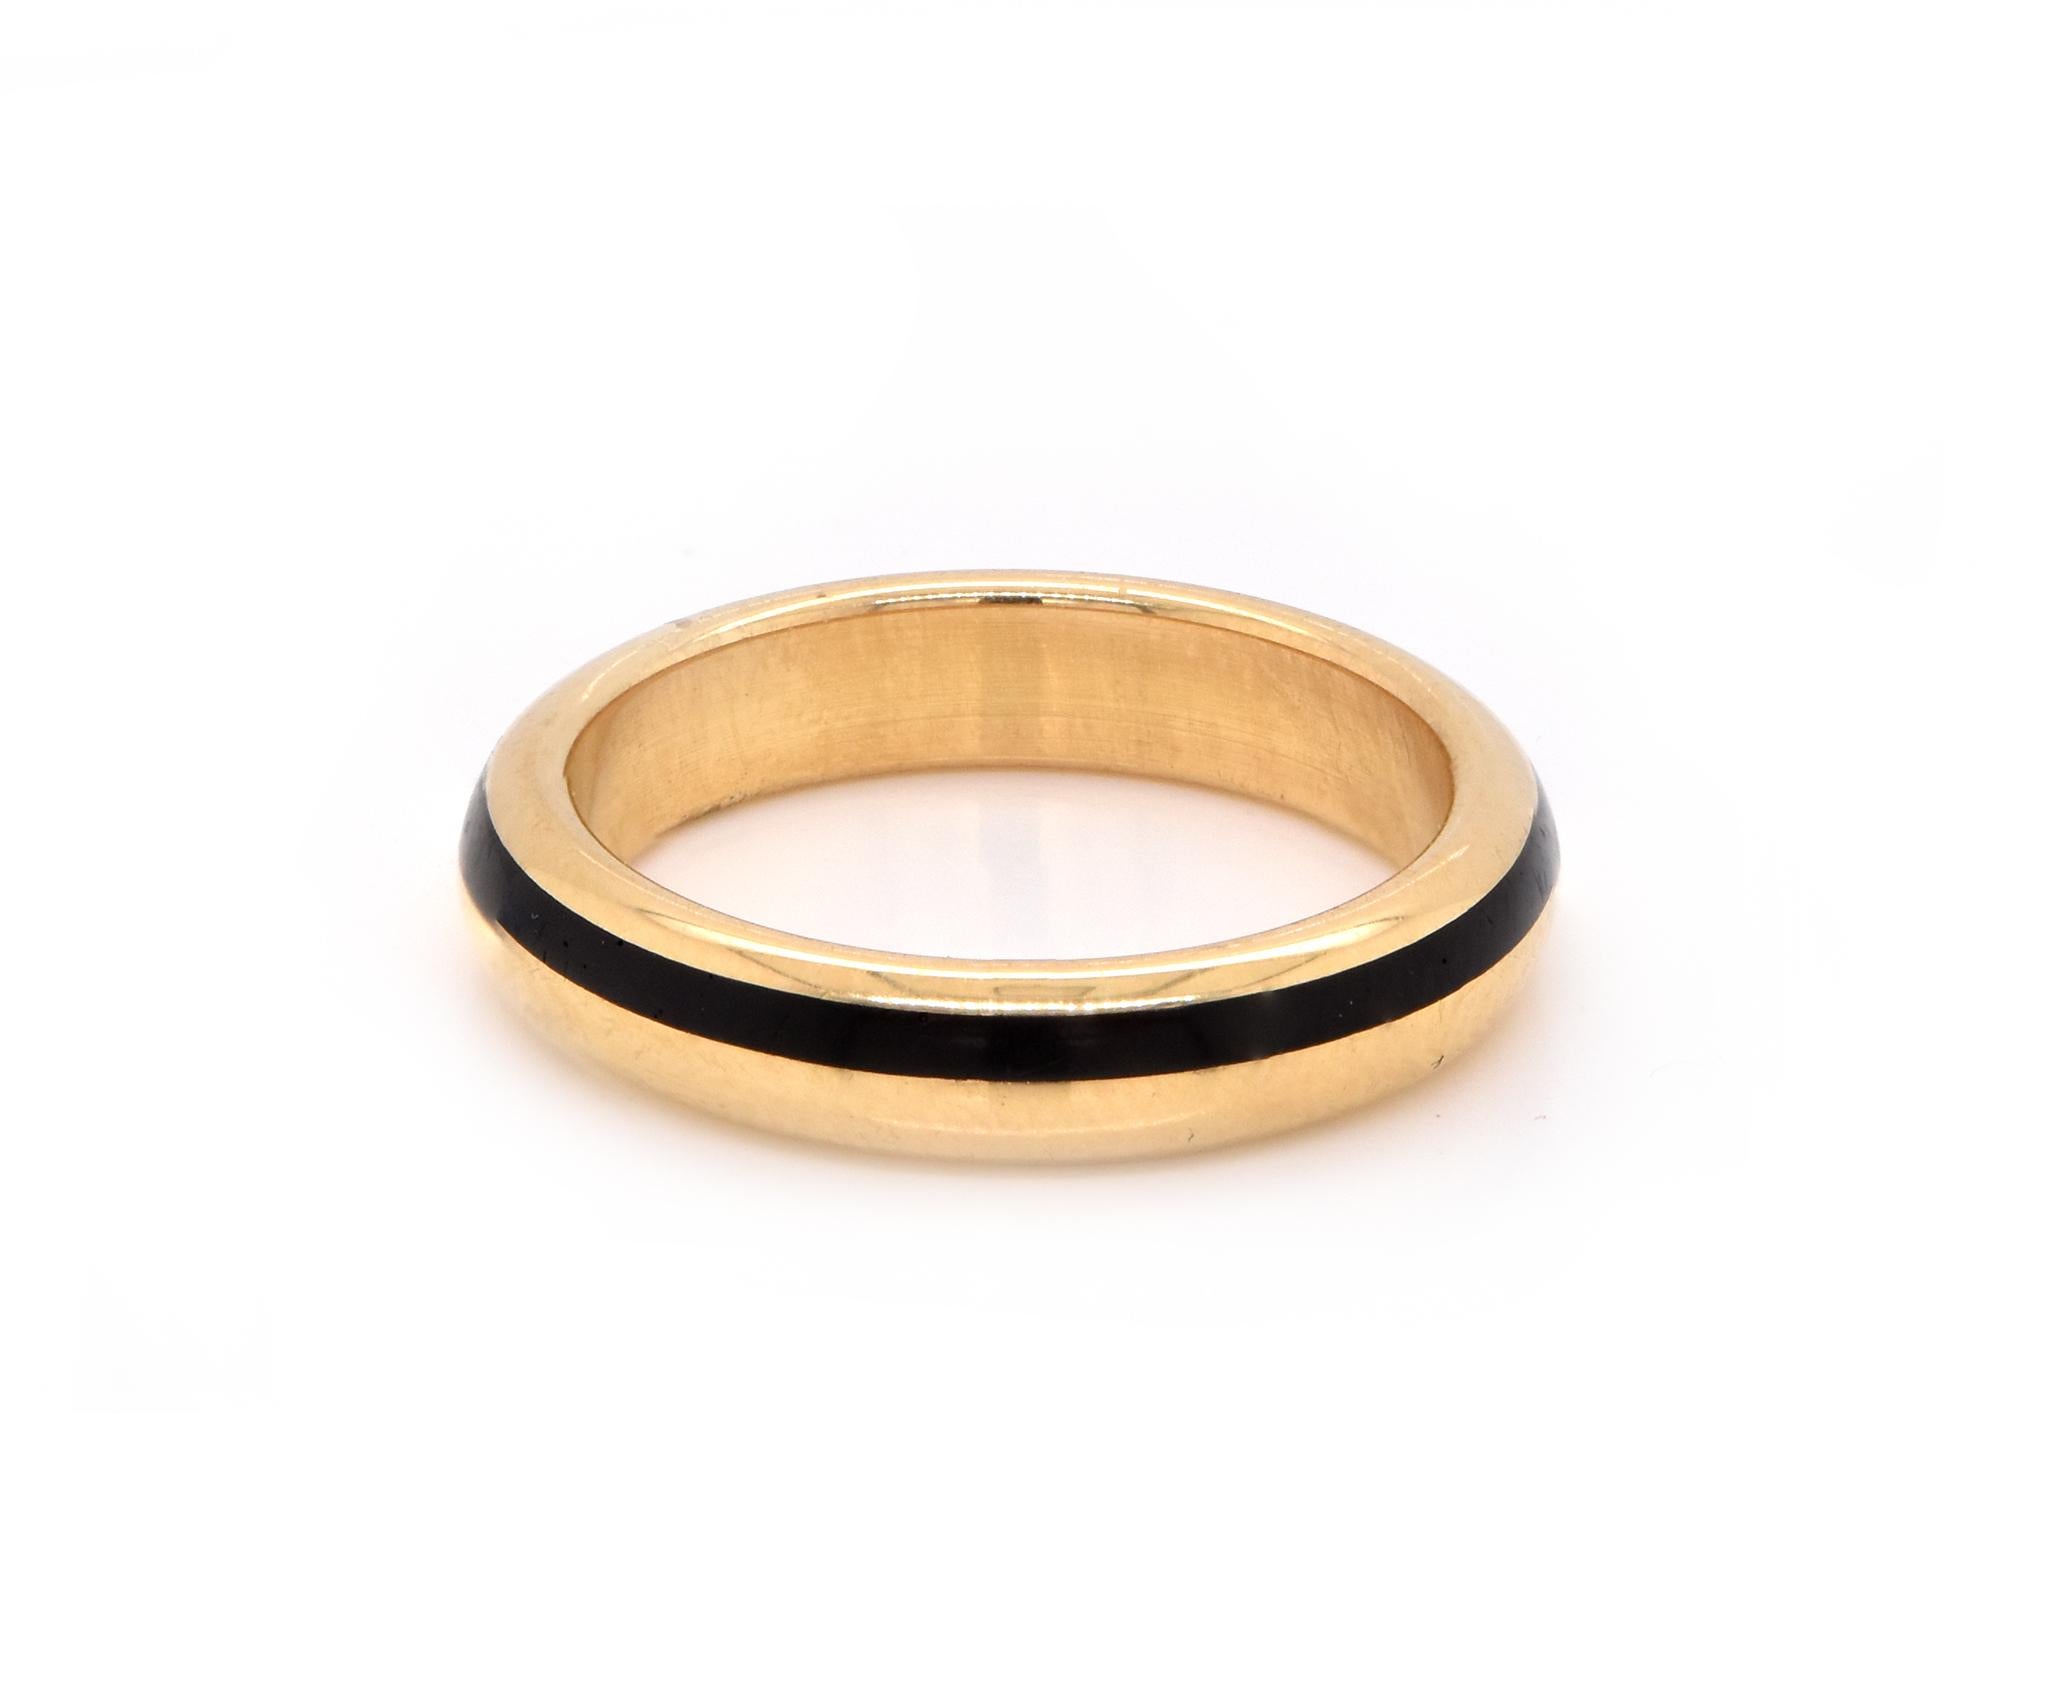 Designer: individuell
Material: 18K Gelbgold
Ringgröße: 5 (bitte erlauben Sie bis zu 2 zusätzliche Arbeitstage für Größenanfragen)
Abmessungen: Ringspitze misst 3,82 mm
Gewicht:  4.99 Gramm
